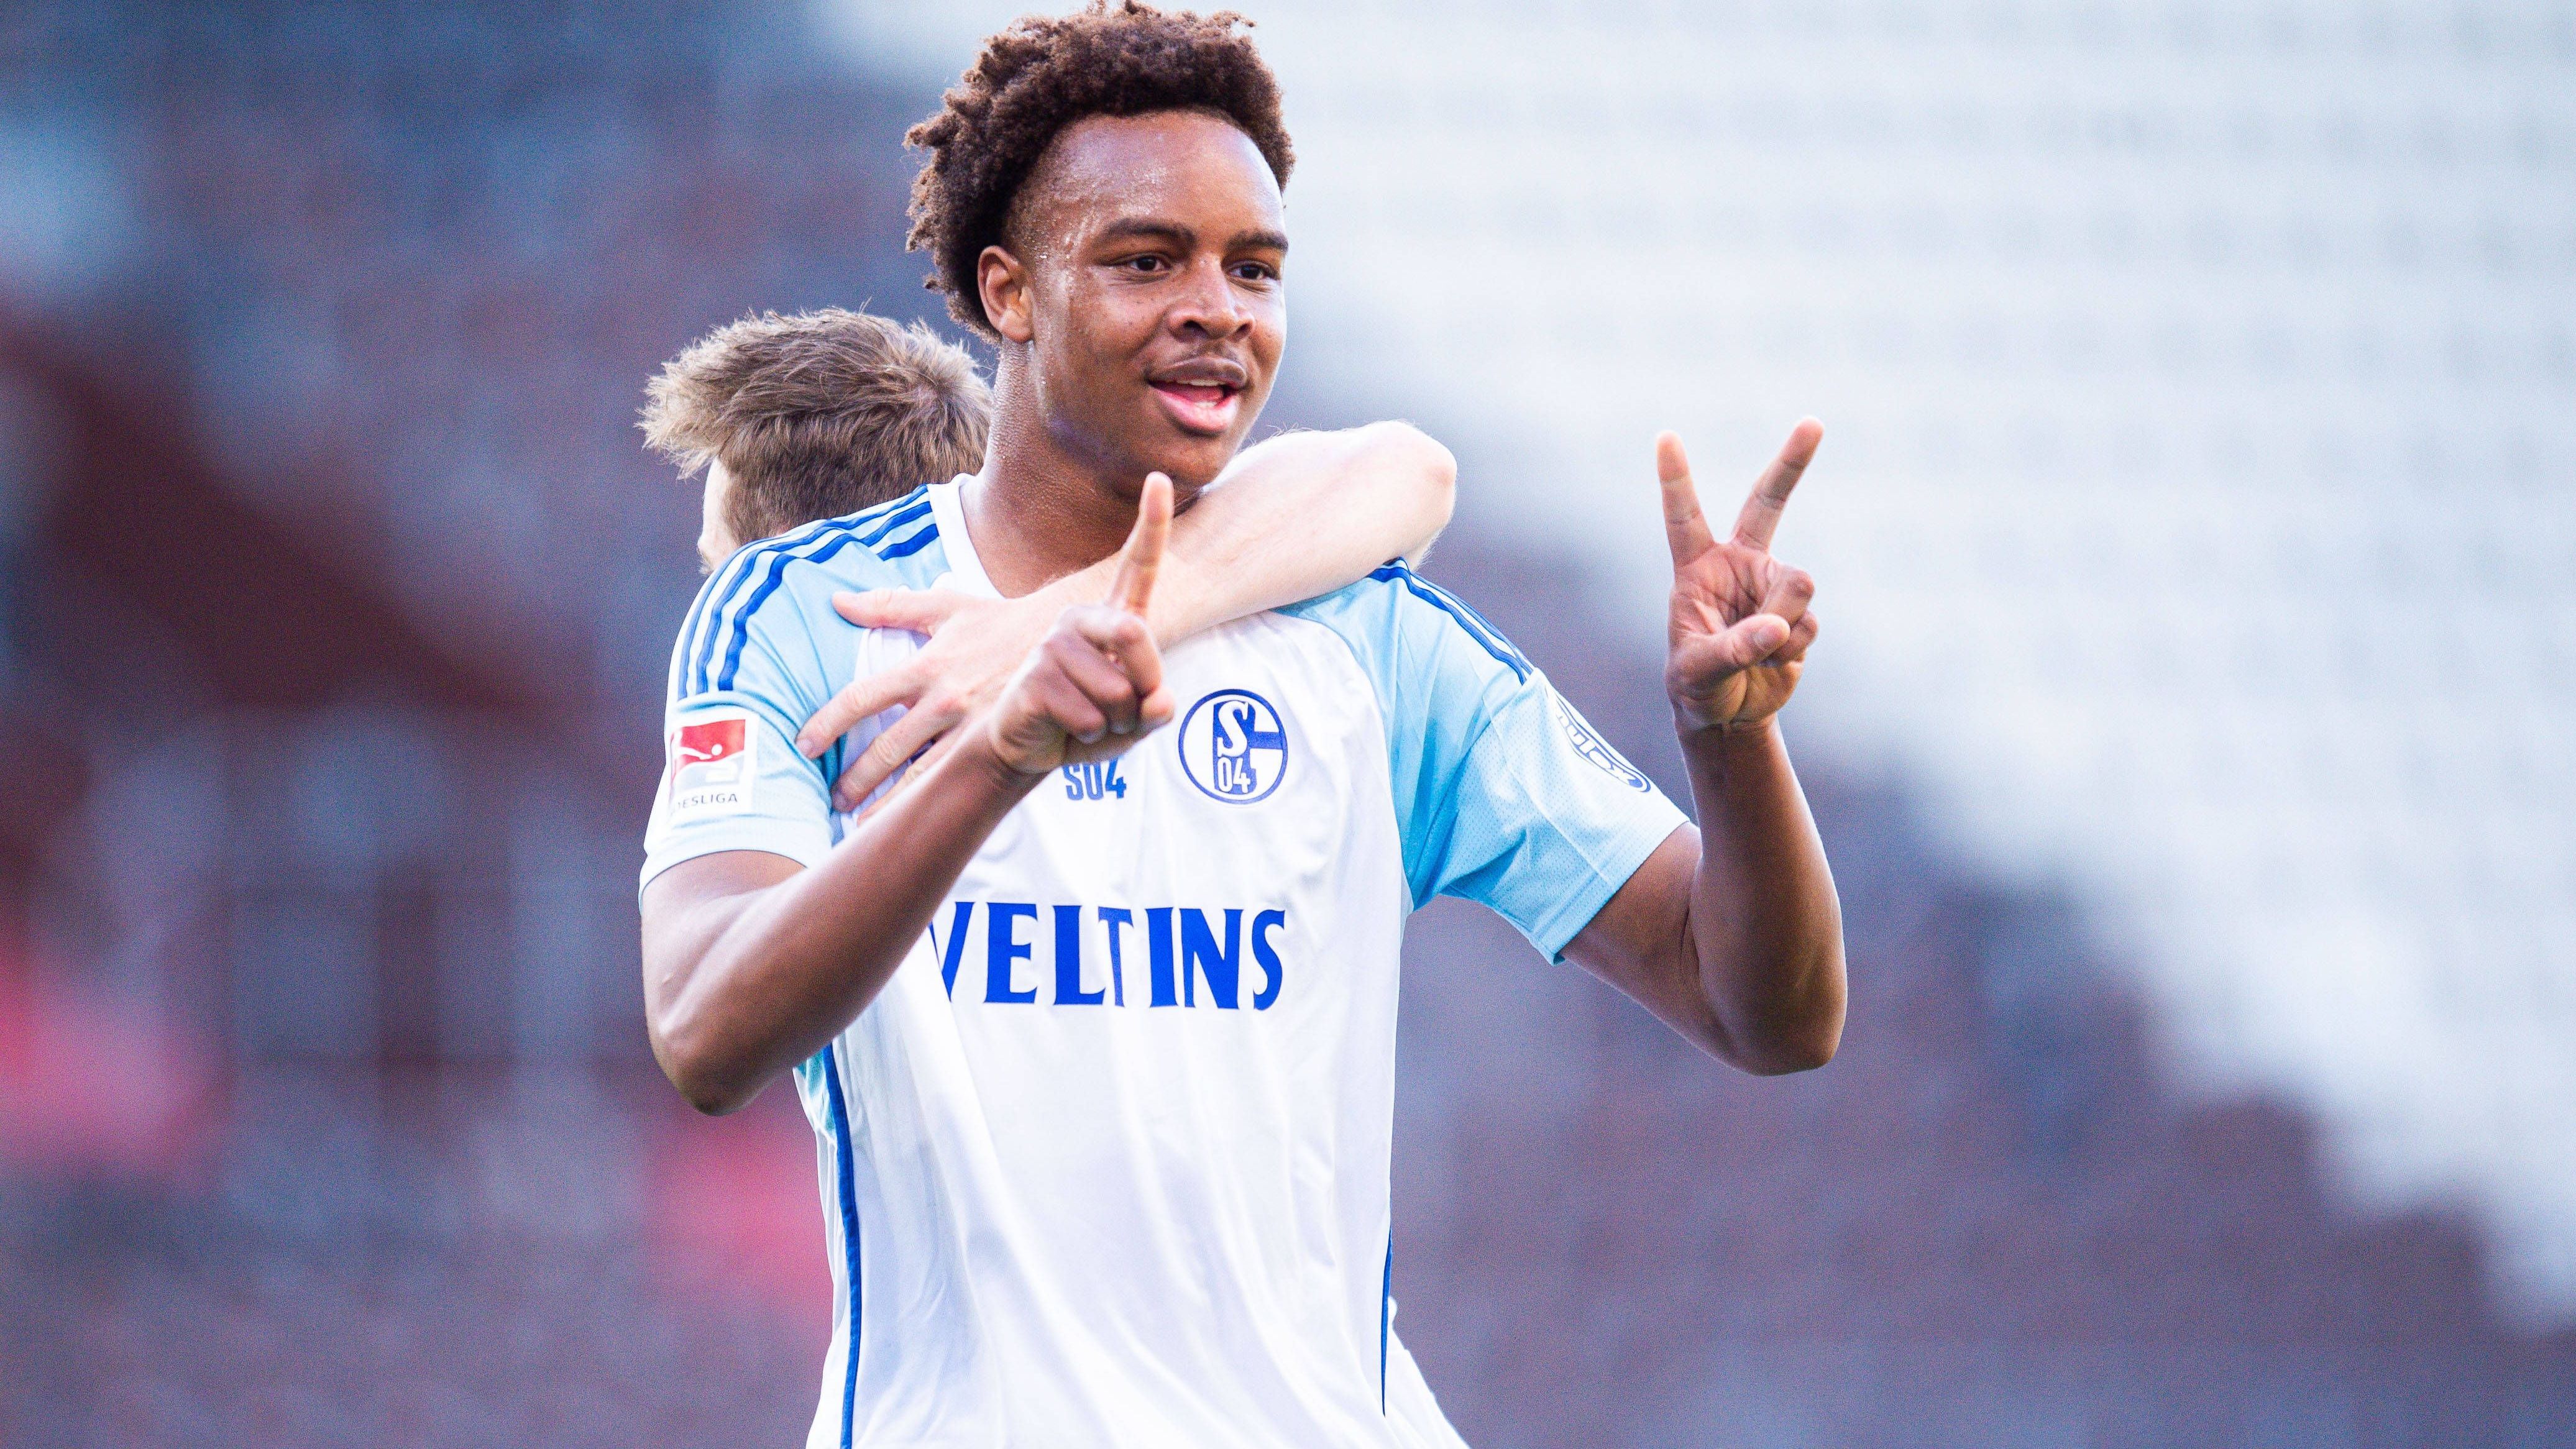 <strong>Assan Ouedraogo (FC Schalke 04)</strong><br>Der siebte Spieler auf dem Wunschzettel von Eberl ist demnach Assan Ouedraogo.&nbsp;Der 18-Jährige gilt als eines der größten Offensiv-Talente Deutschlands. Er soll laut der "Bild" eine Ausstiegsklausel im Vertrag haben und würde wohl nur acht Millionen Euro kosten.&nbsp;